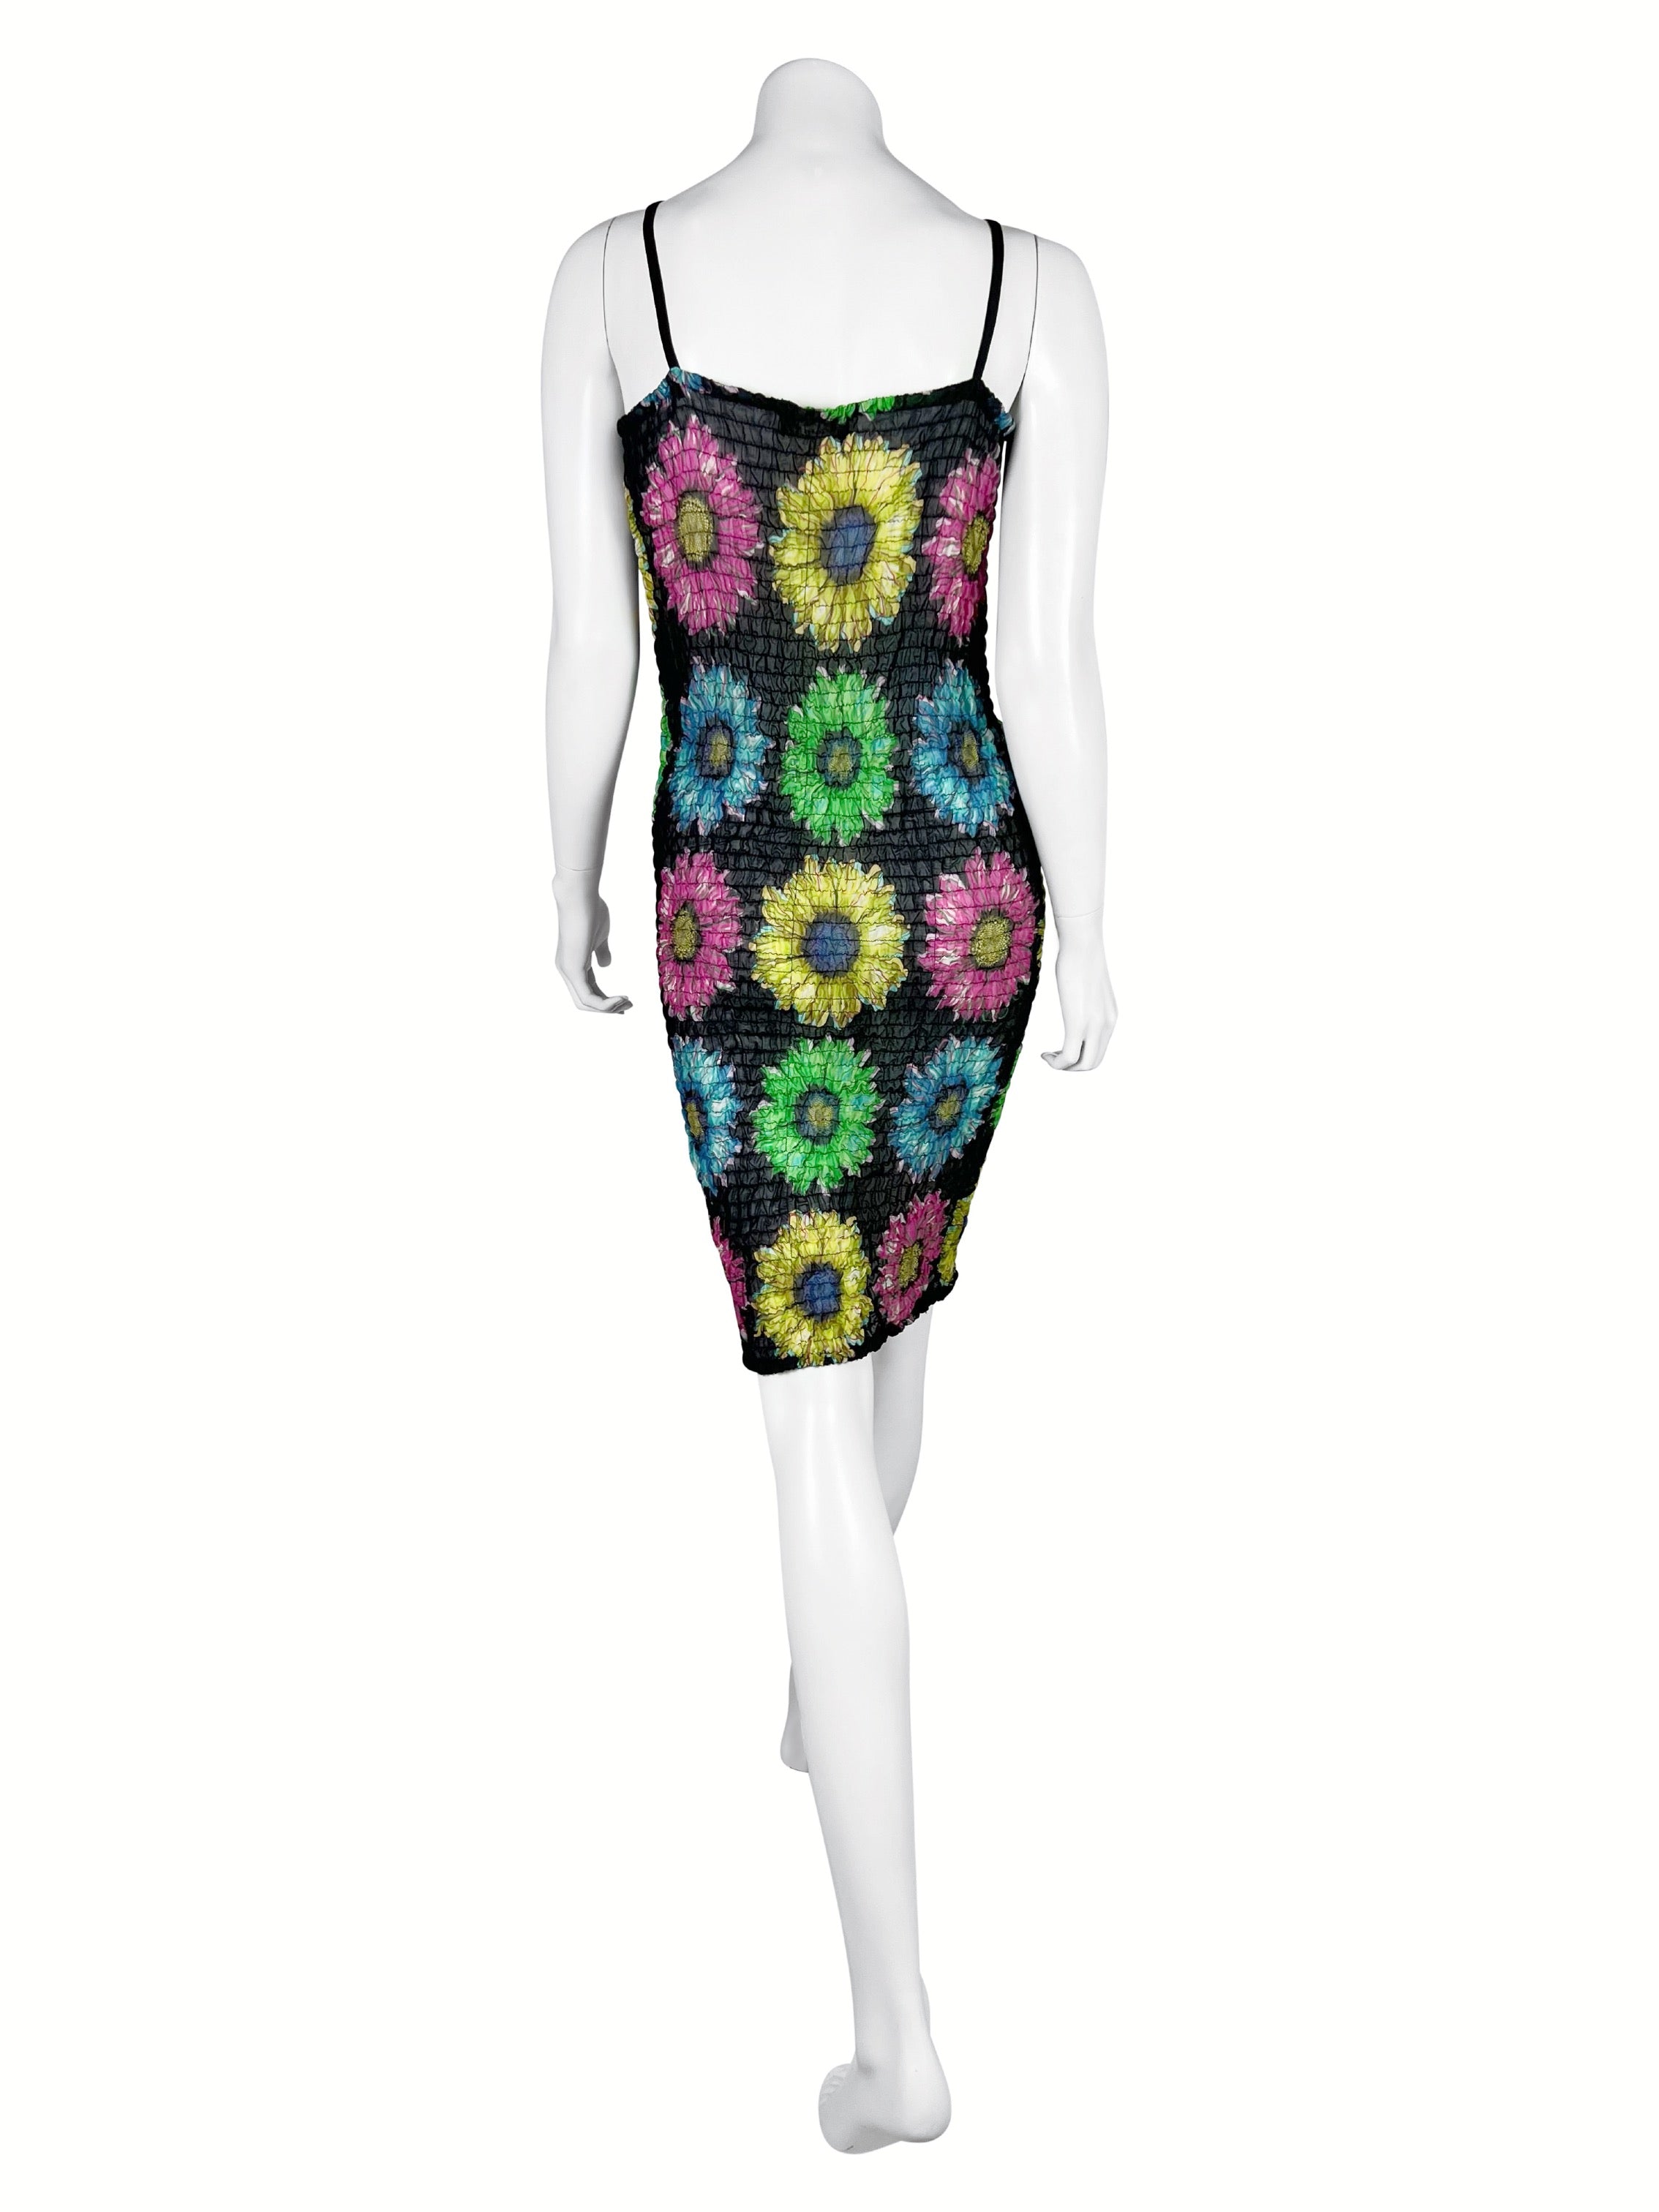 Versace Spring 2002 Sunflower Print Dress